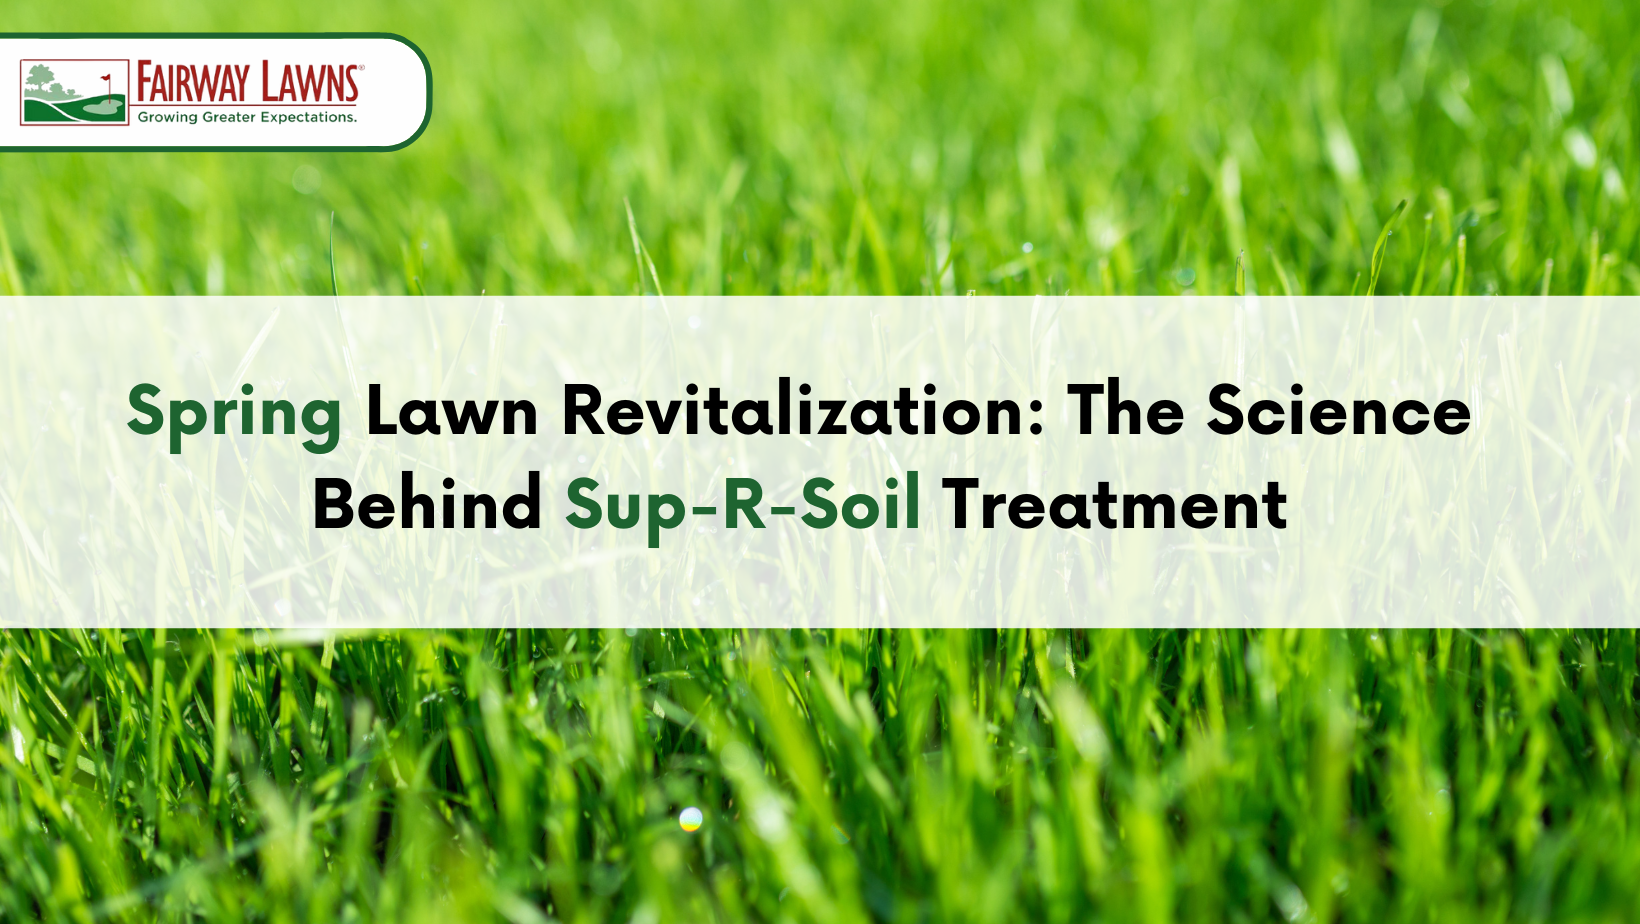 Sup-R-Soil Treatment